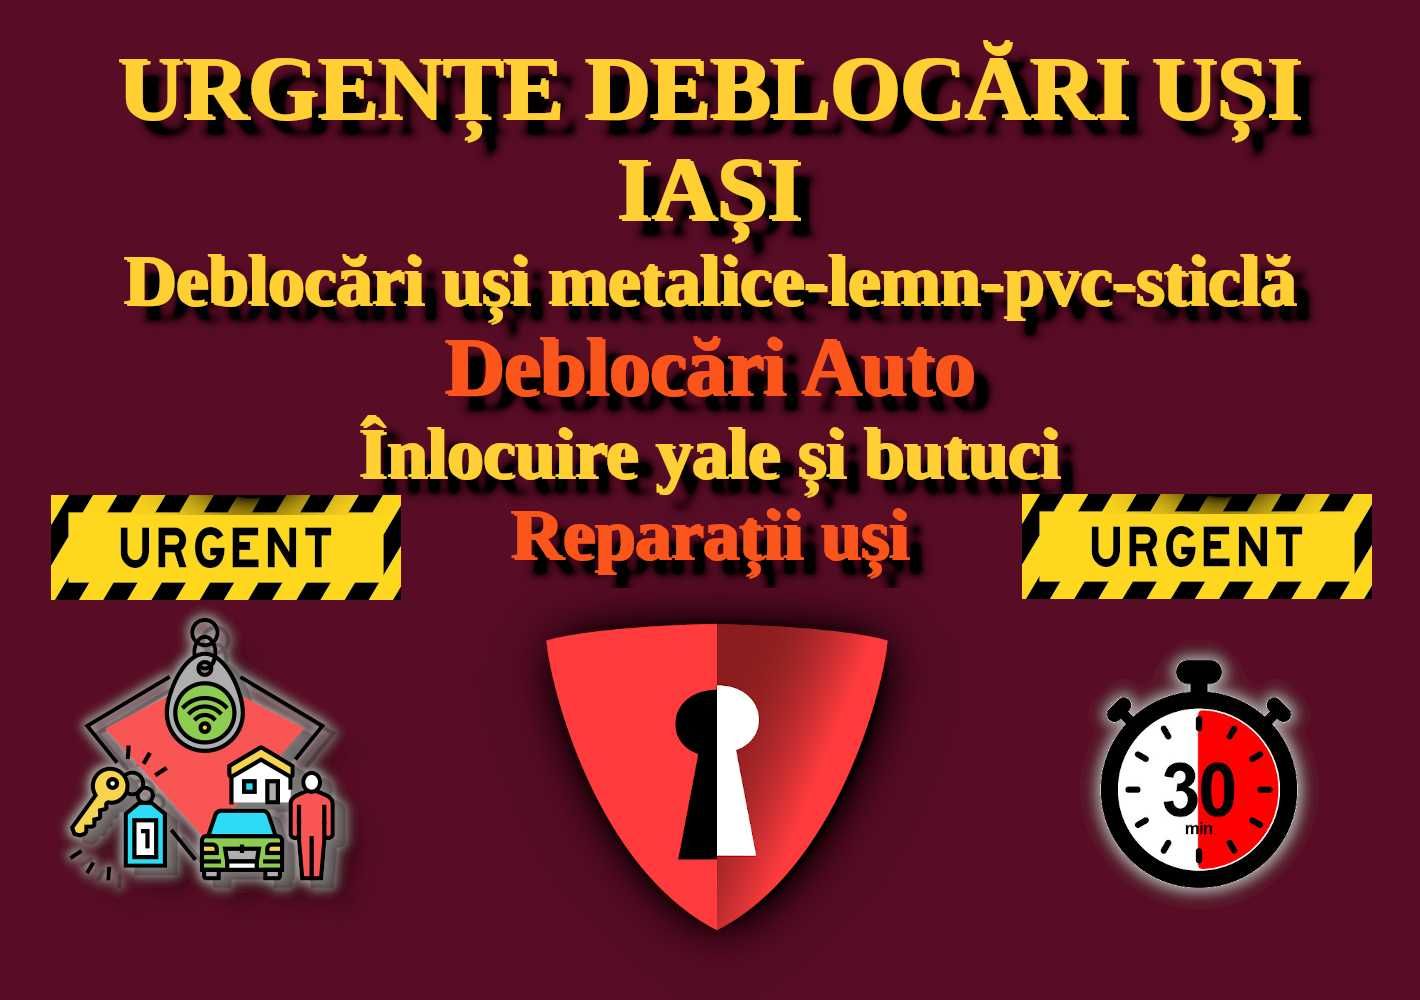 Deblocări uși Iași - Deblocări auto - Lăcătuș Iași